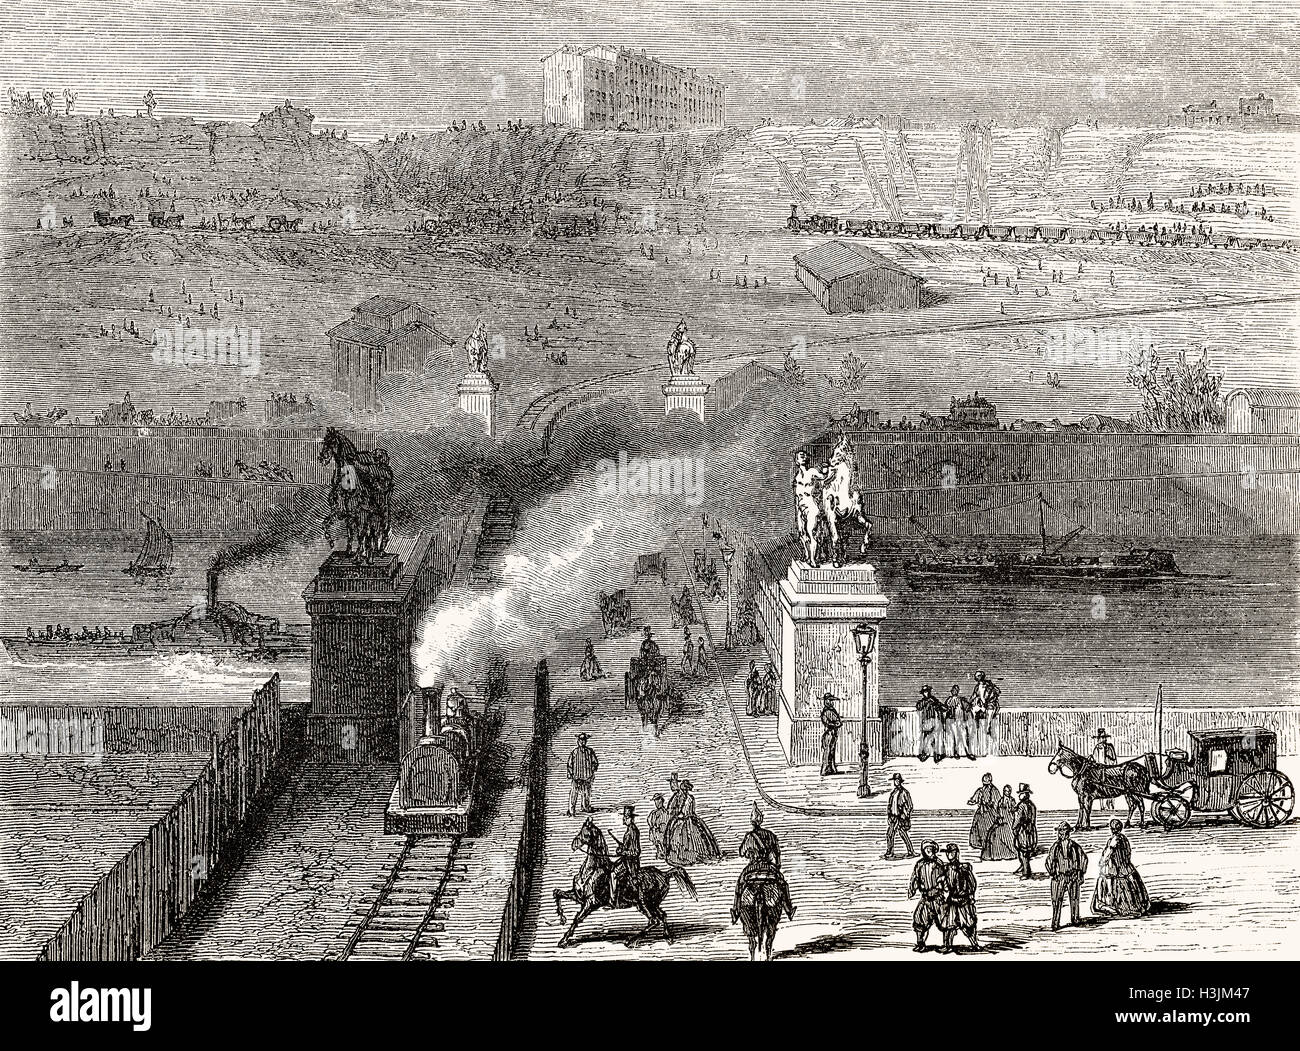 Dégager les Trocadero hill pour construire le Champ de Mars, l'Exposition internationale de 1867, Paris, France, 1866 Banque D'Images